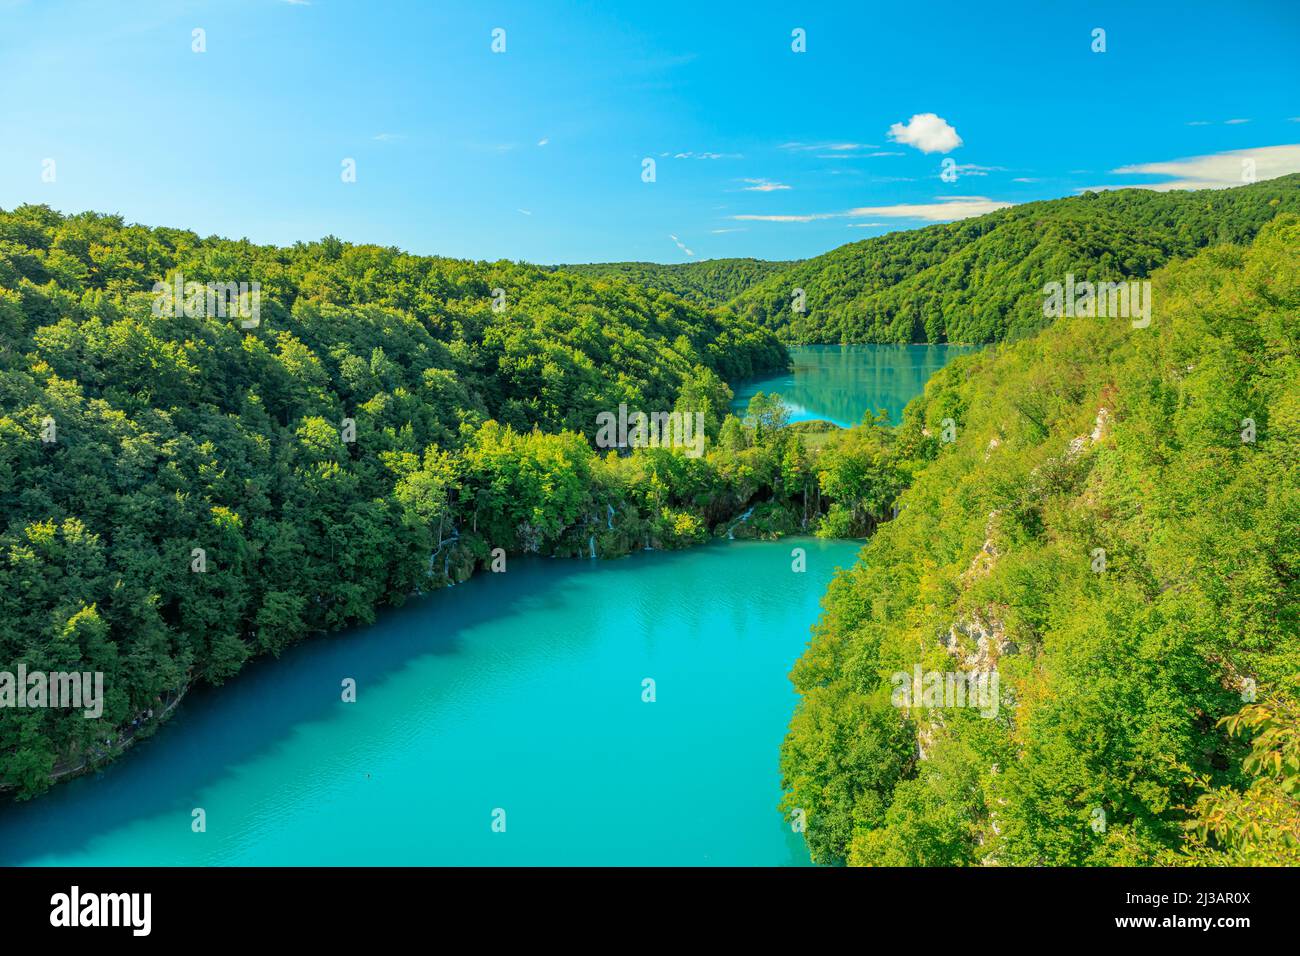 Punto de vista del Parque Nacional de los Lagos de Plitvice en Croacia. Parque forestal natural con lagos y cascadas en la región de Lika. Los lagos Kozjak y Milanovac tienen vistas. Foto de stock